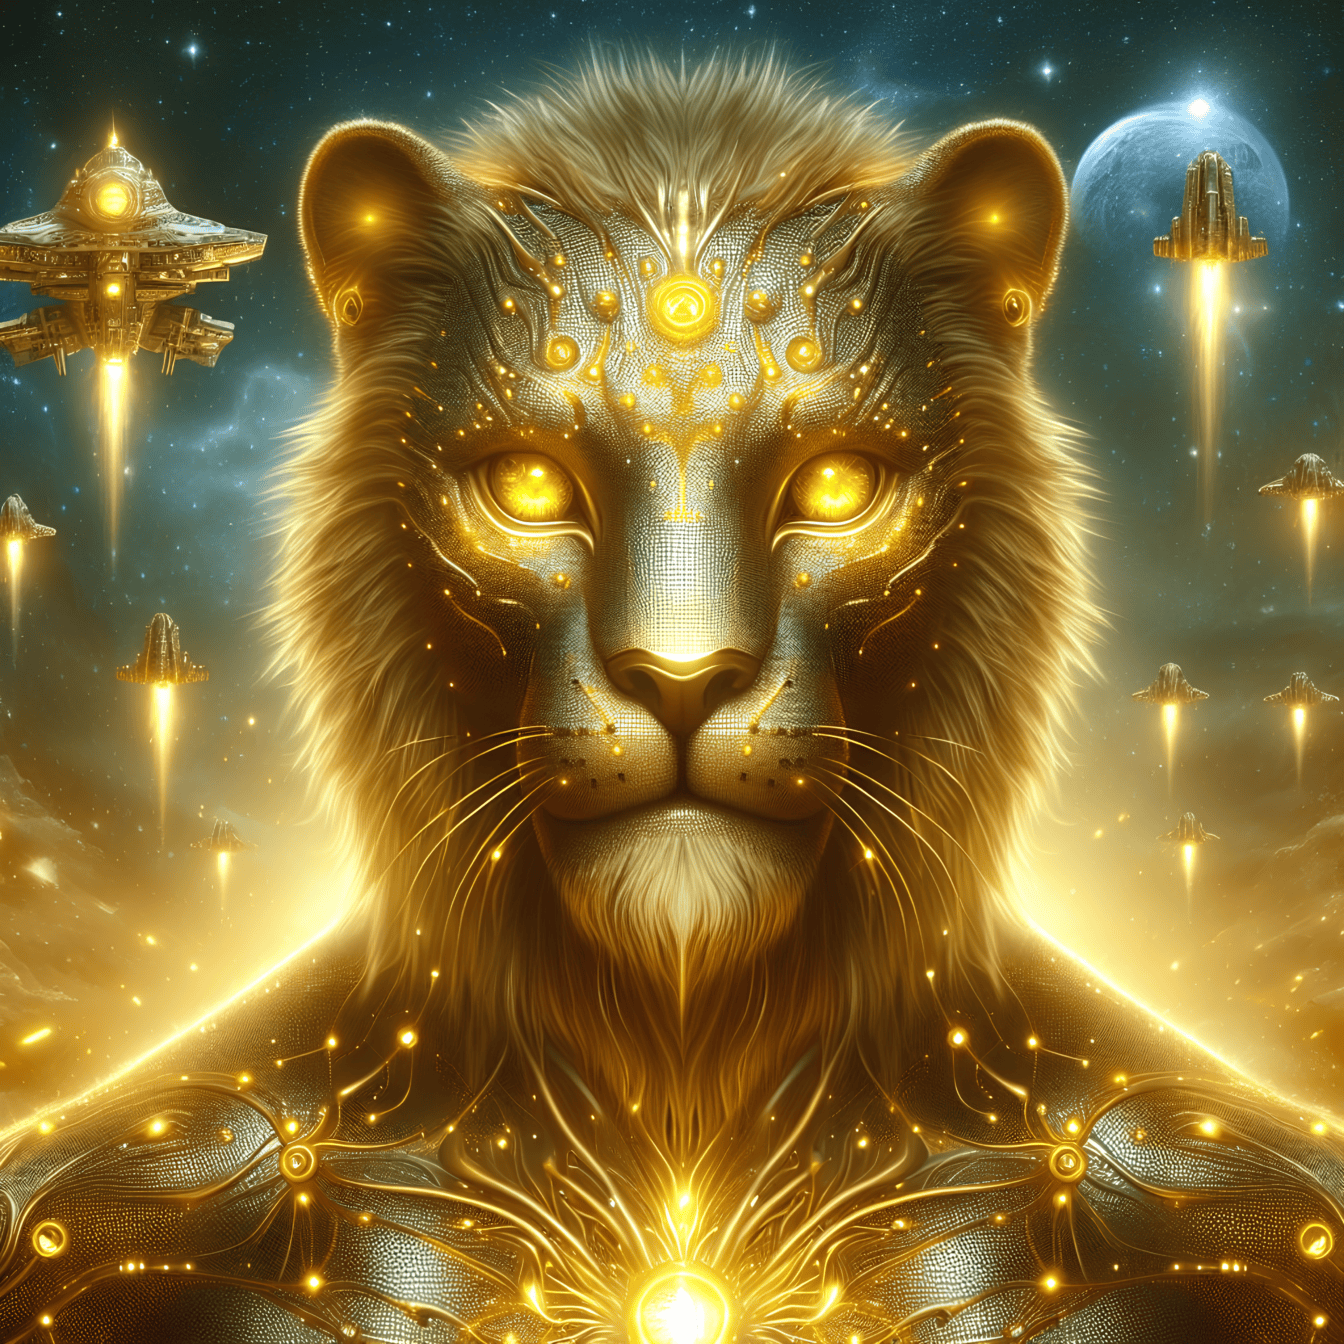 Gráficos digitales de un león alienígena dorado con ojos amarillos brillantes